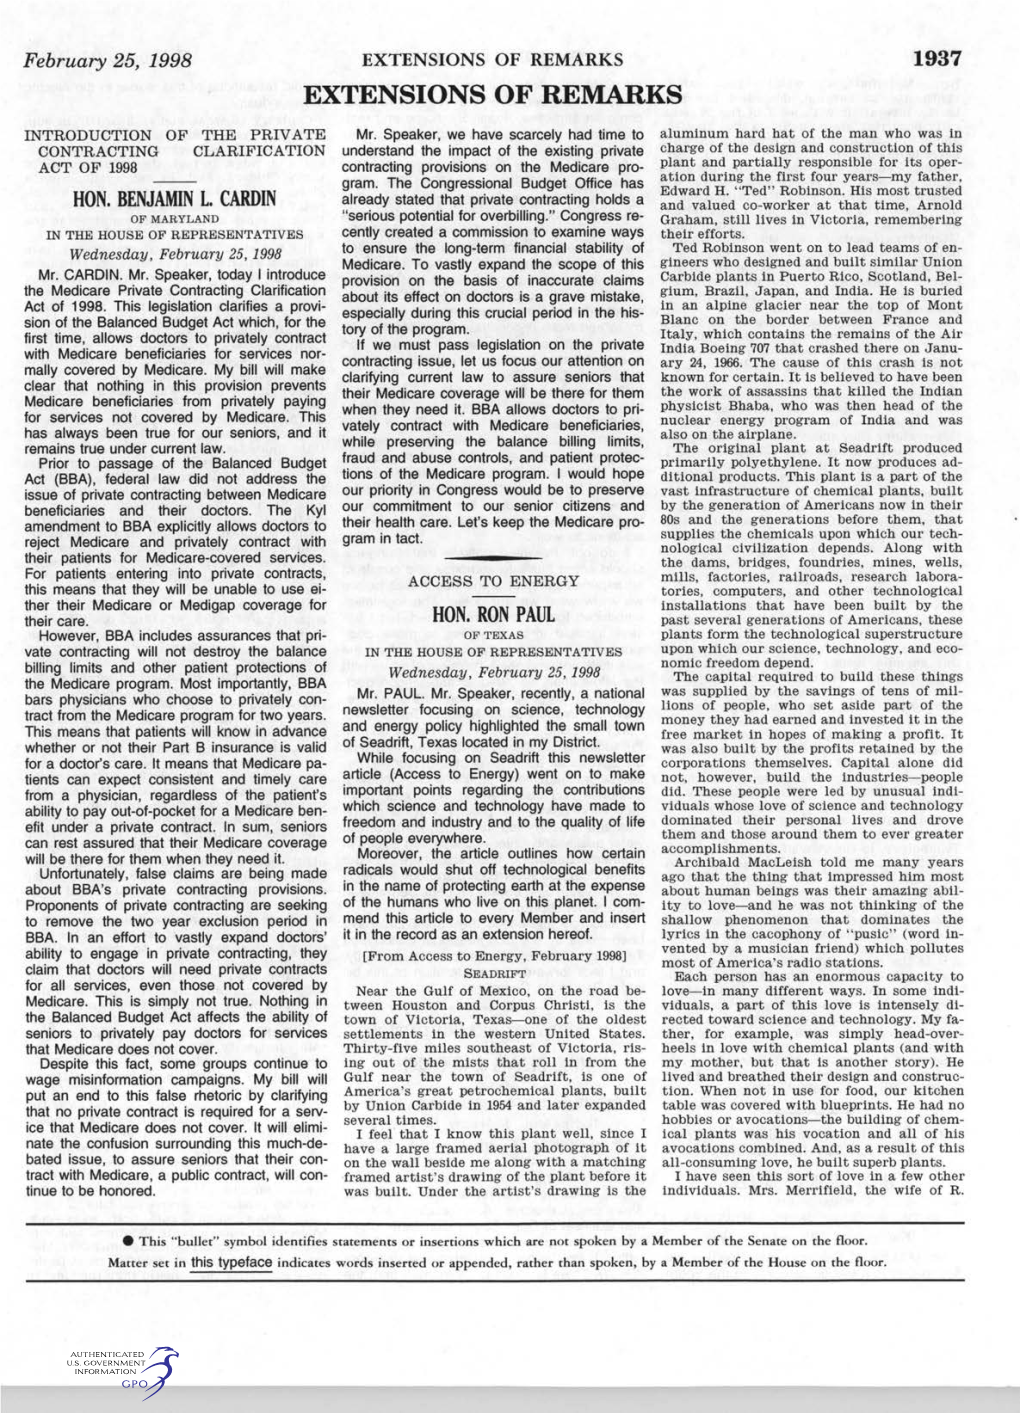 Extensions of Remarks 1937 Extensions of Remarks